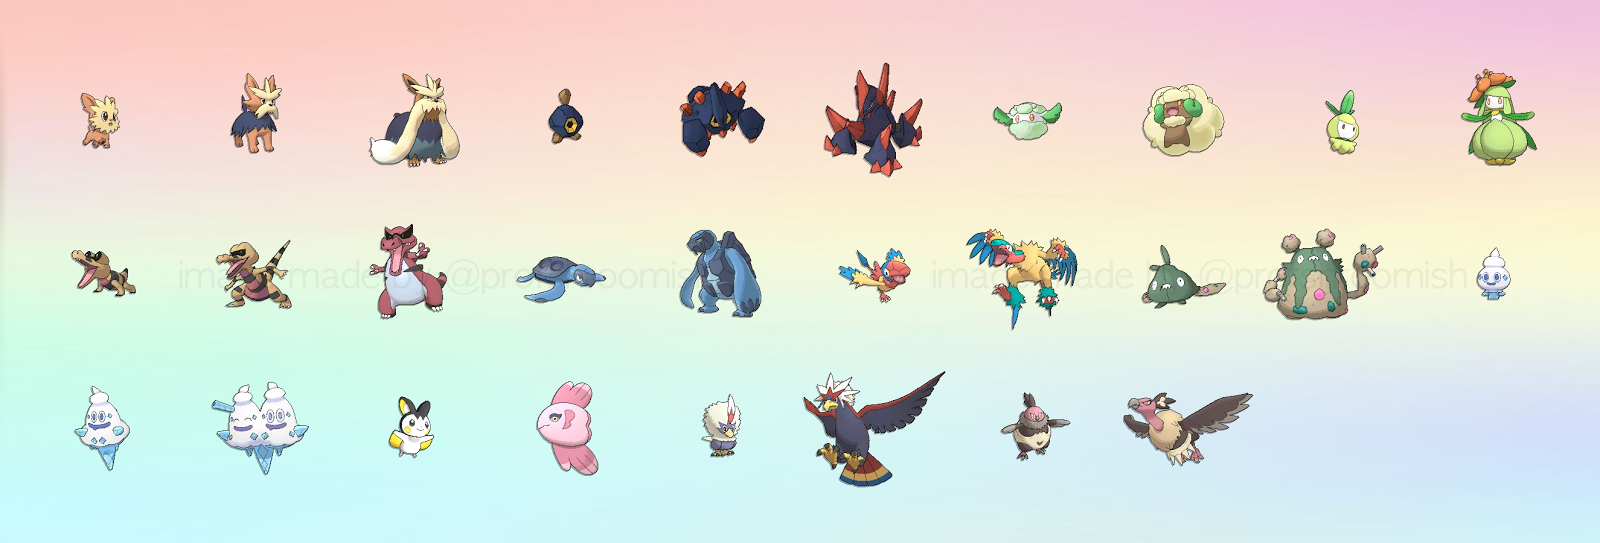 Sandshrew, Cubone, marowak, celebi, alola, Pokémon Sun and Moon